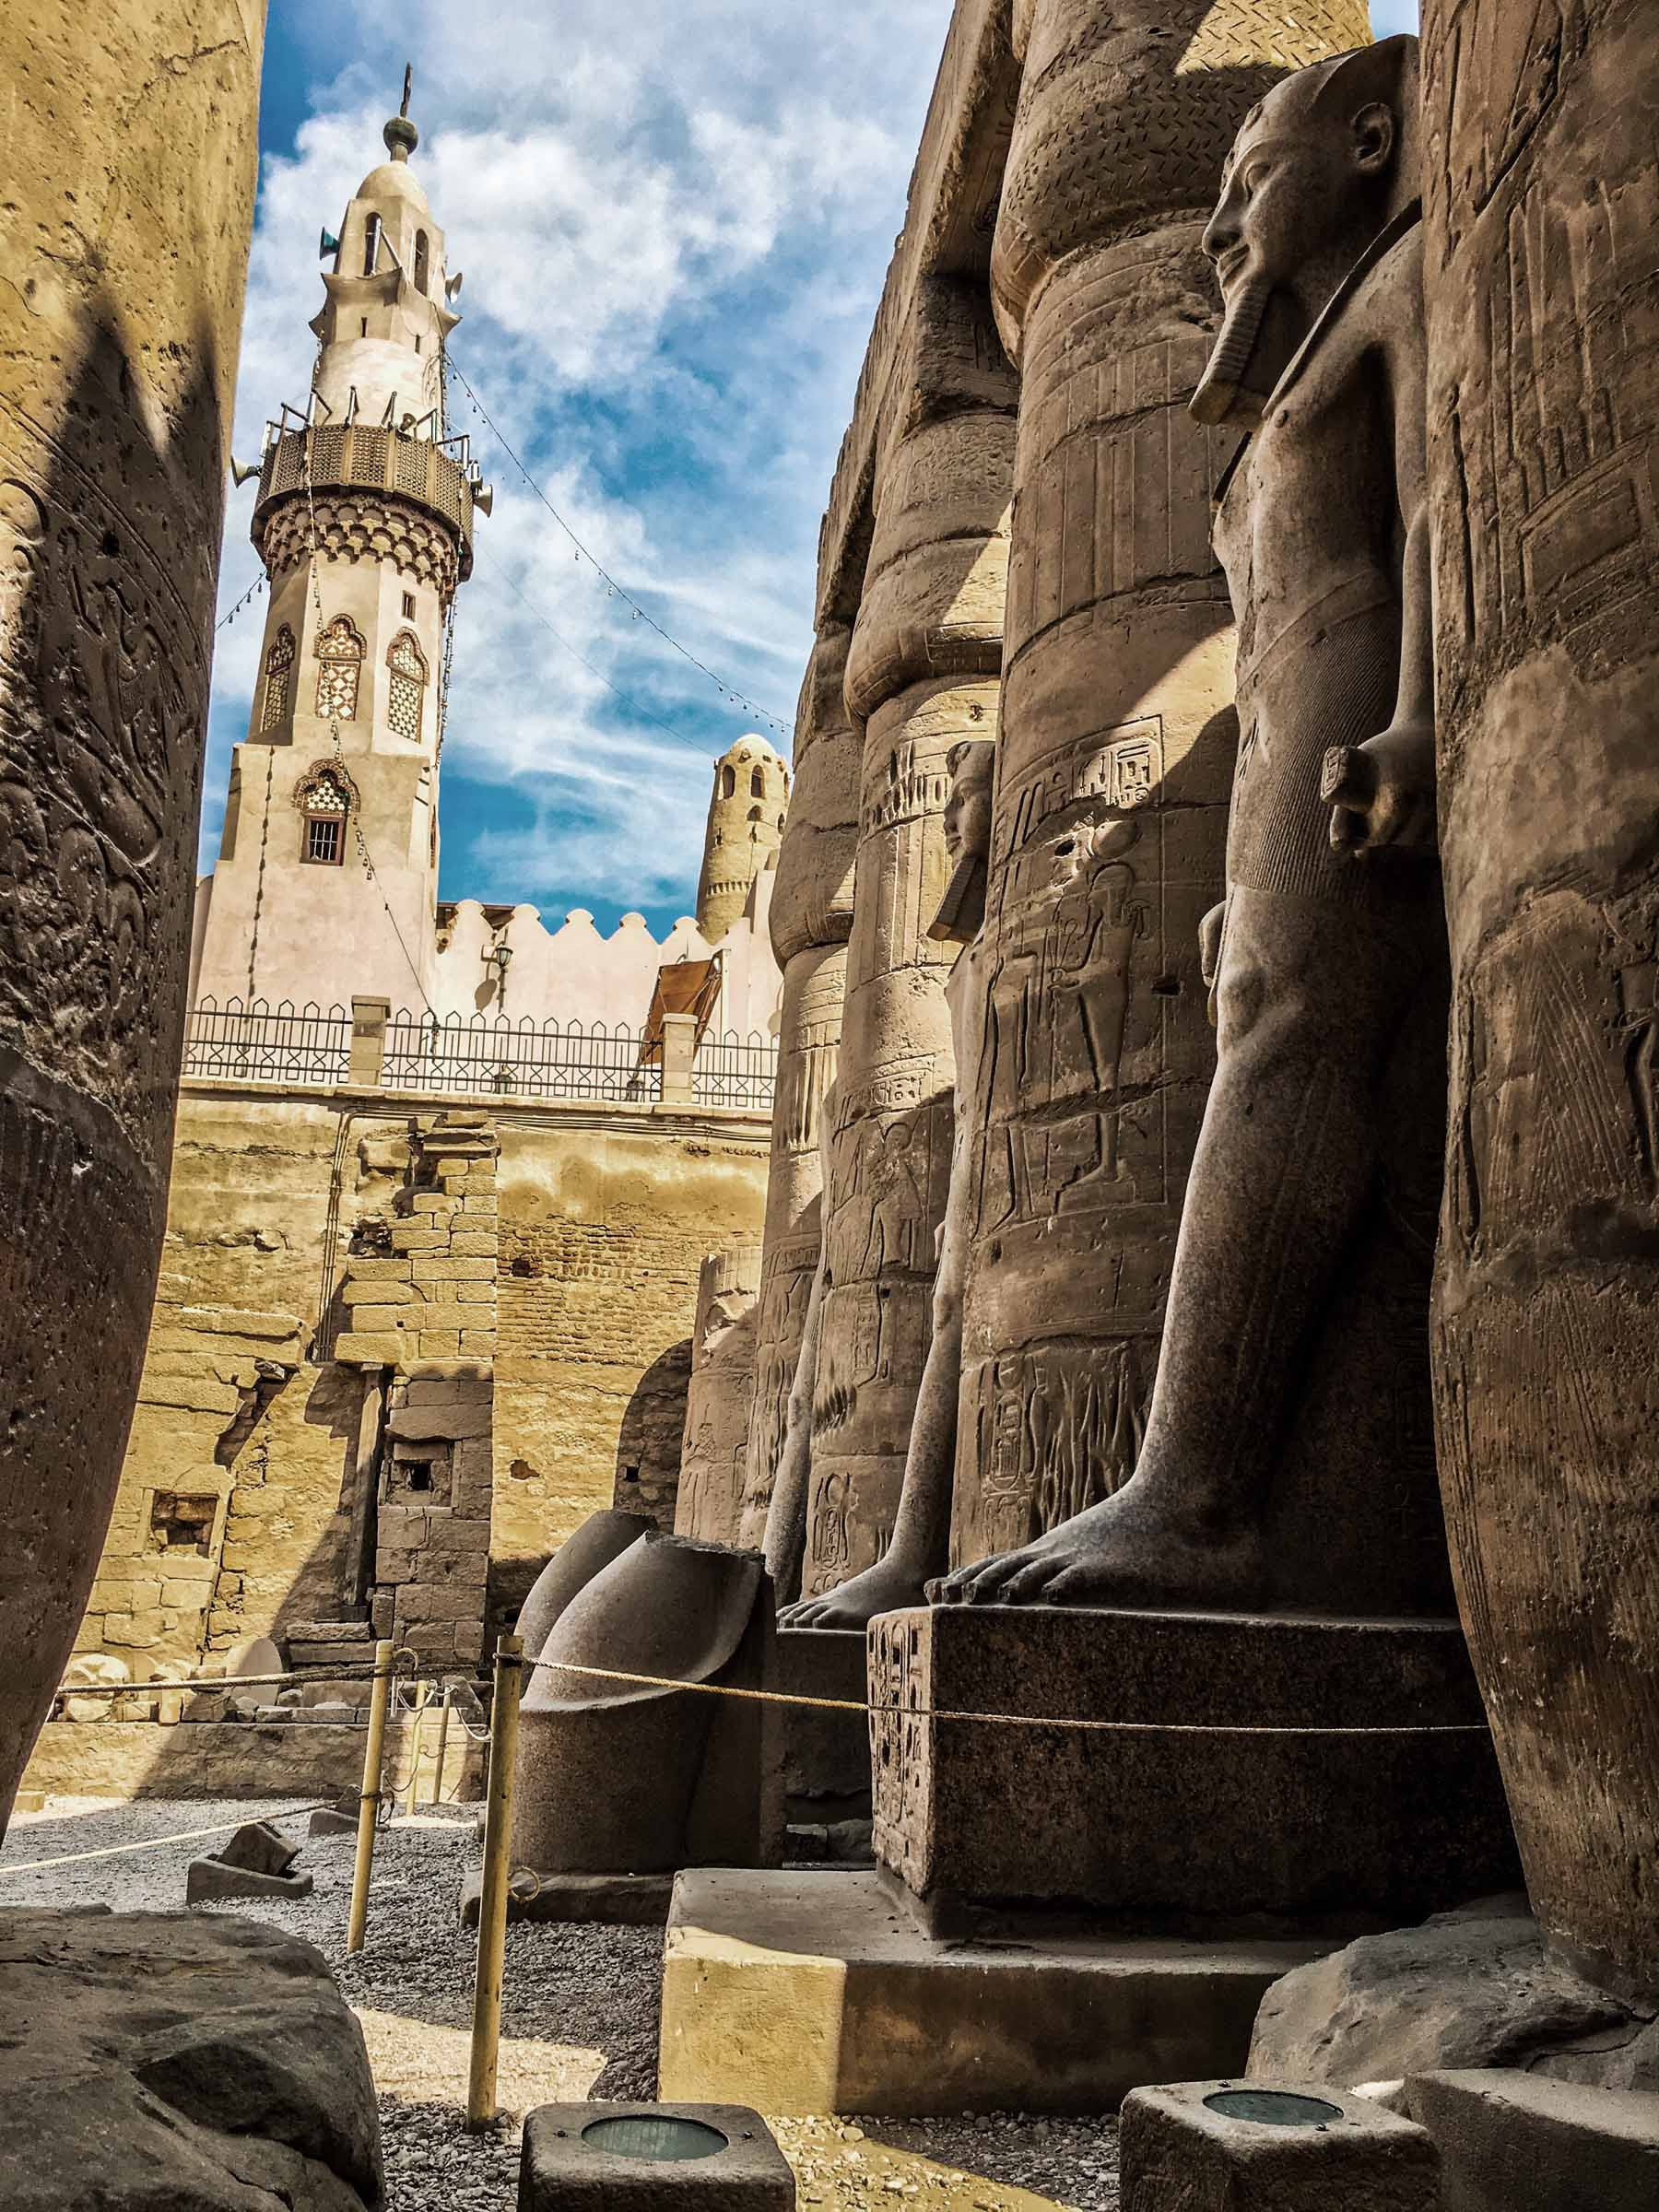 Egypt organizes big celebration to promote tourism in Luxor